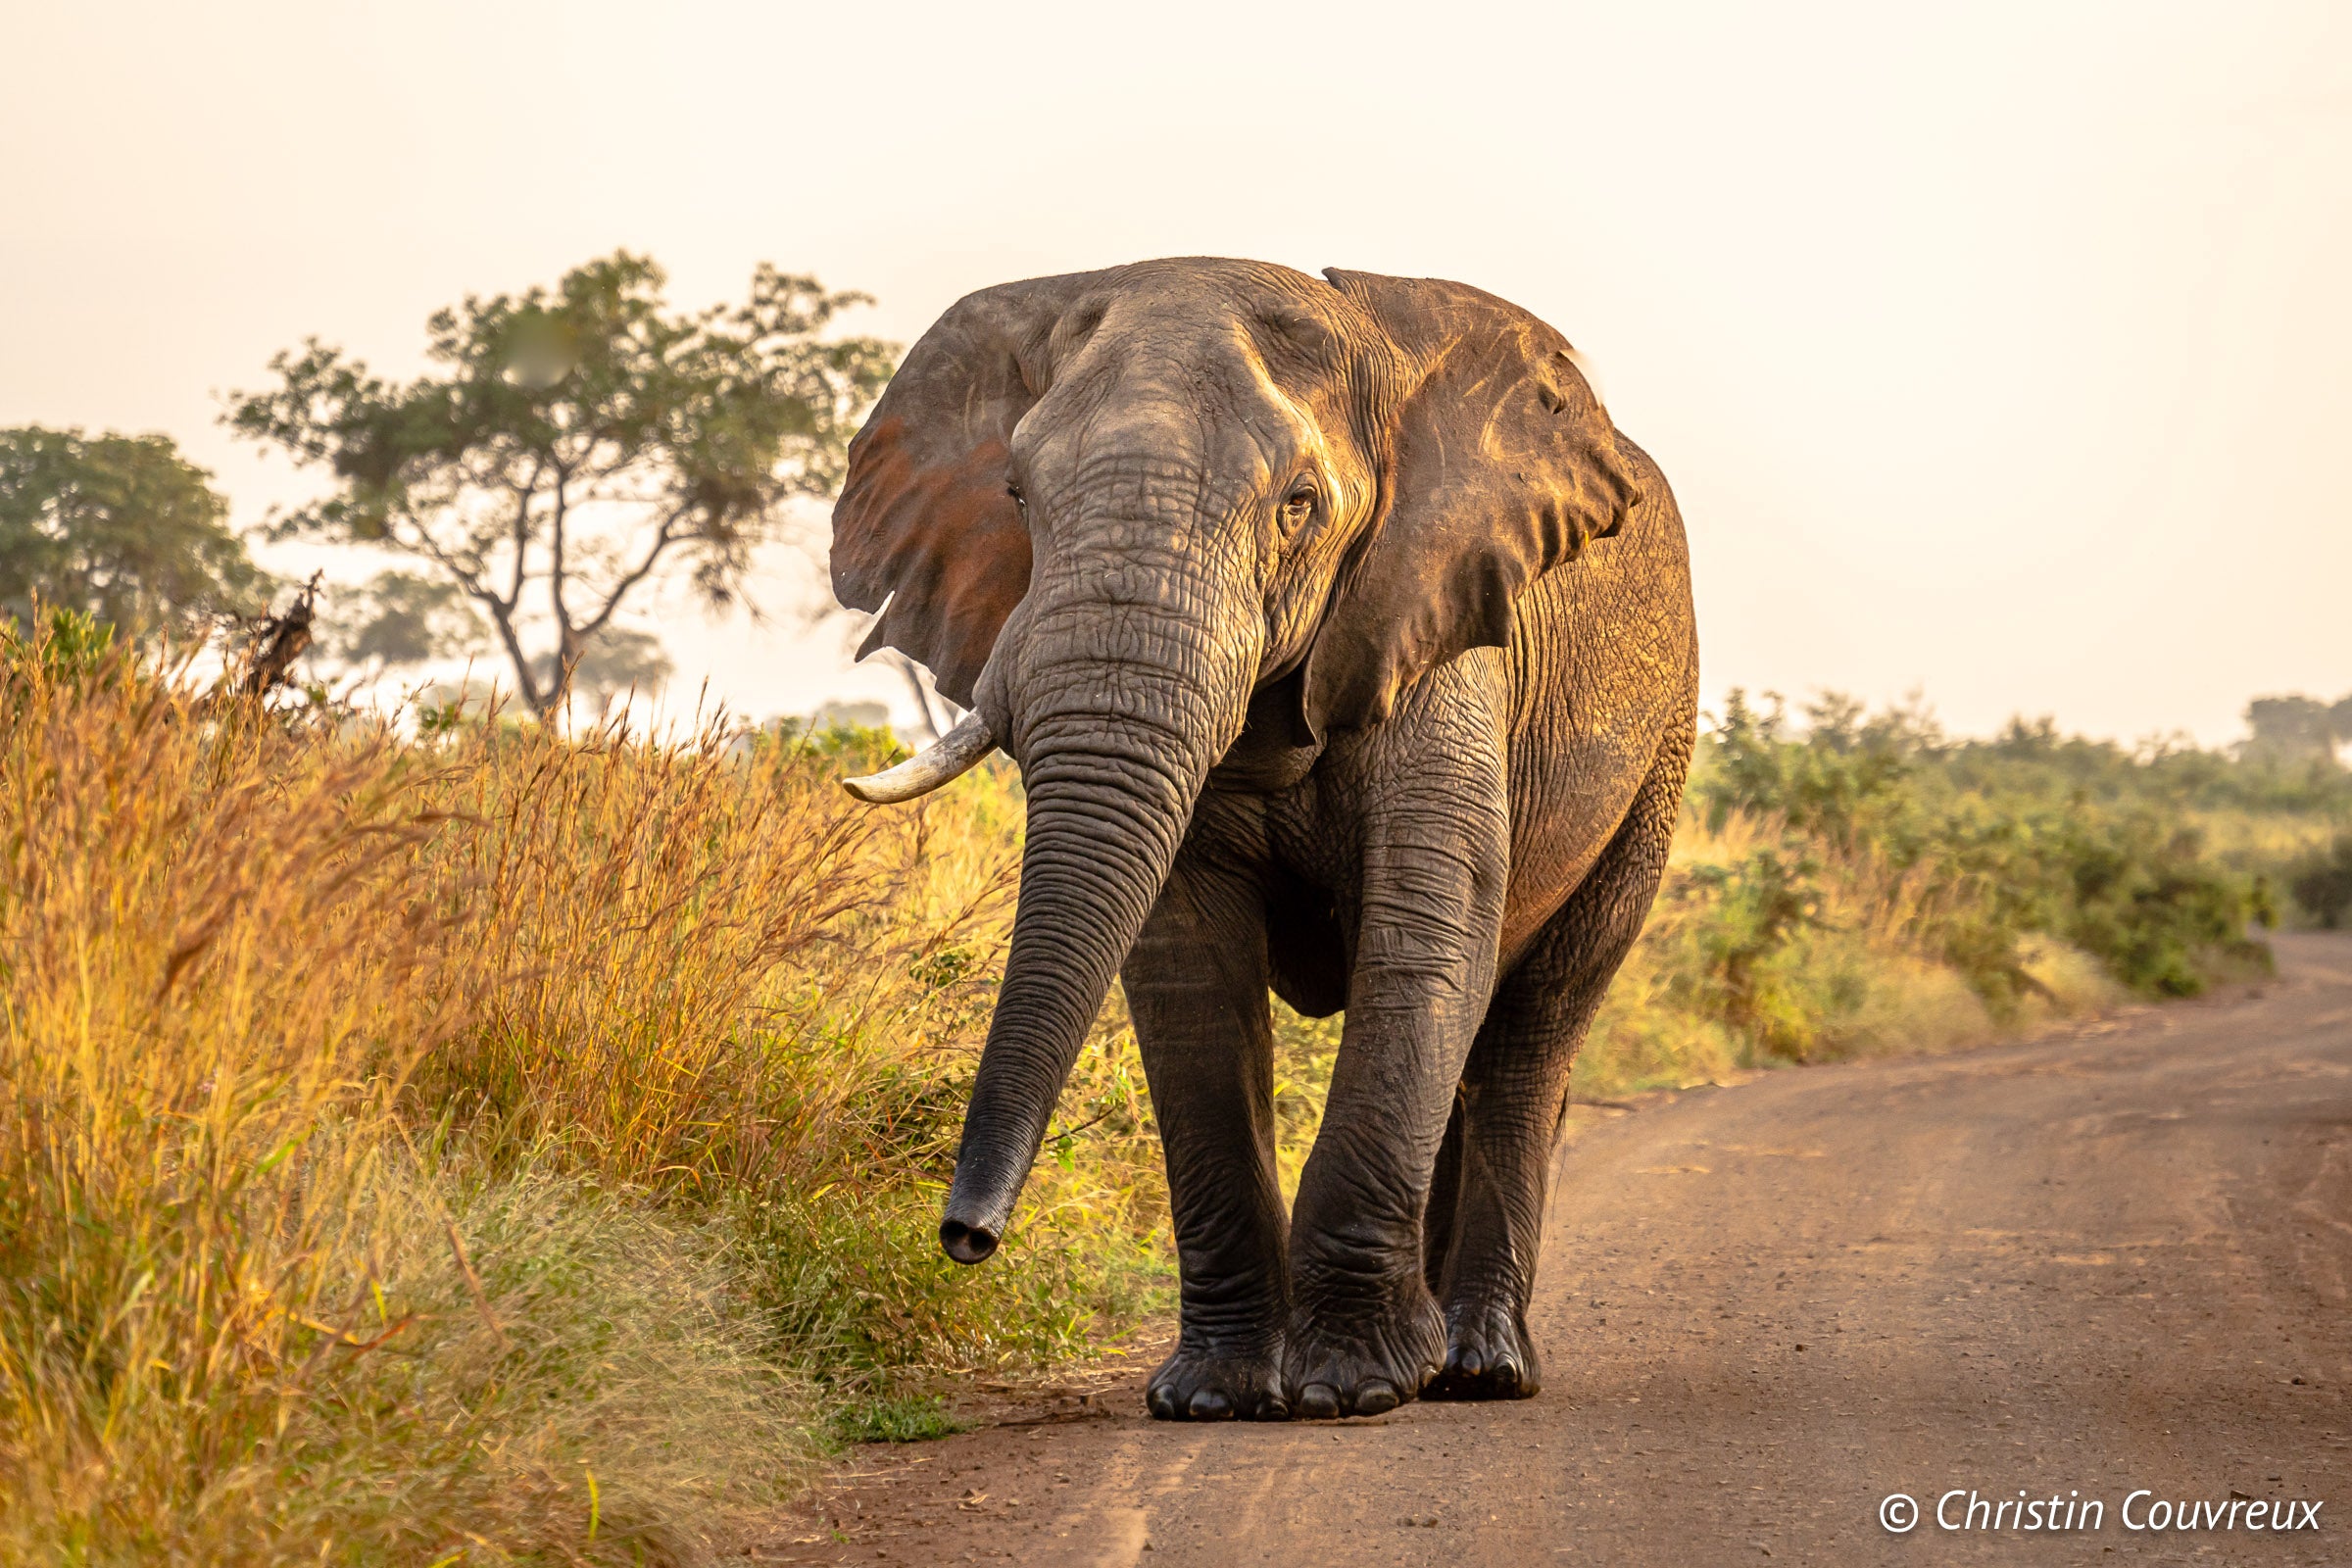 Elephants in Kruger